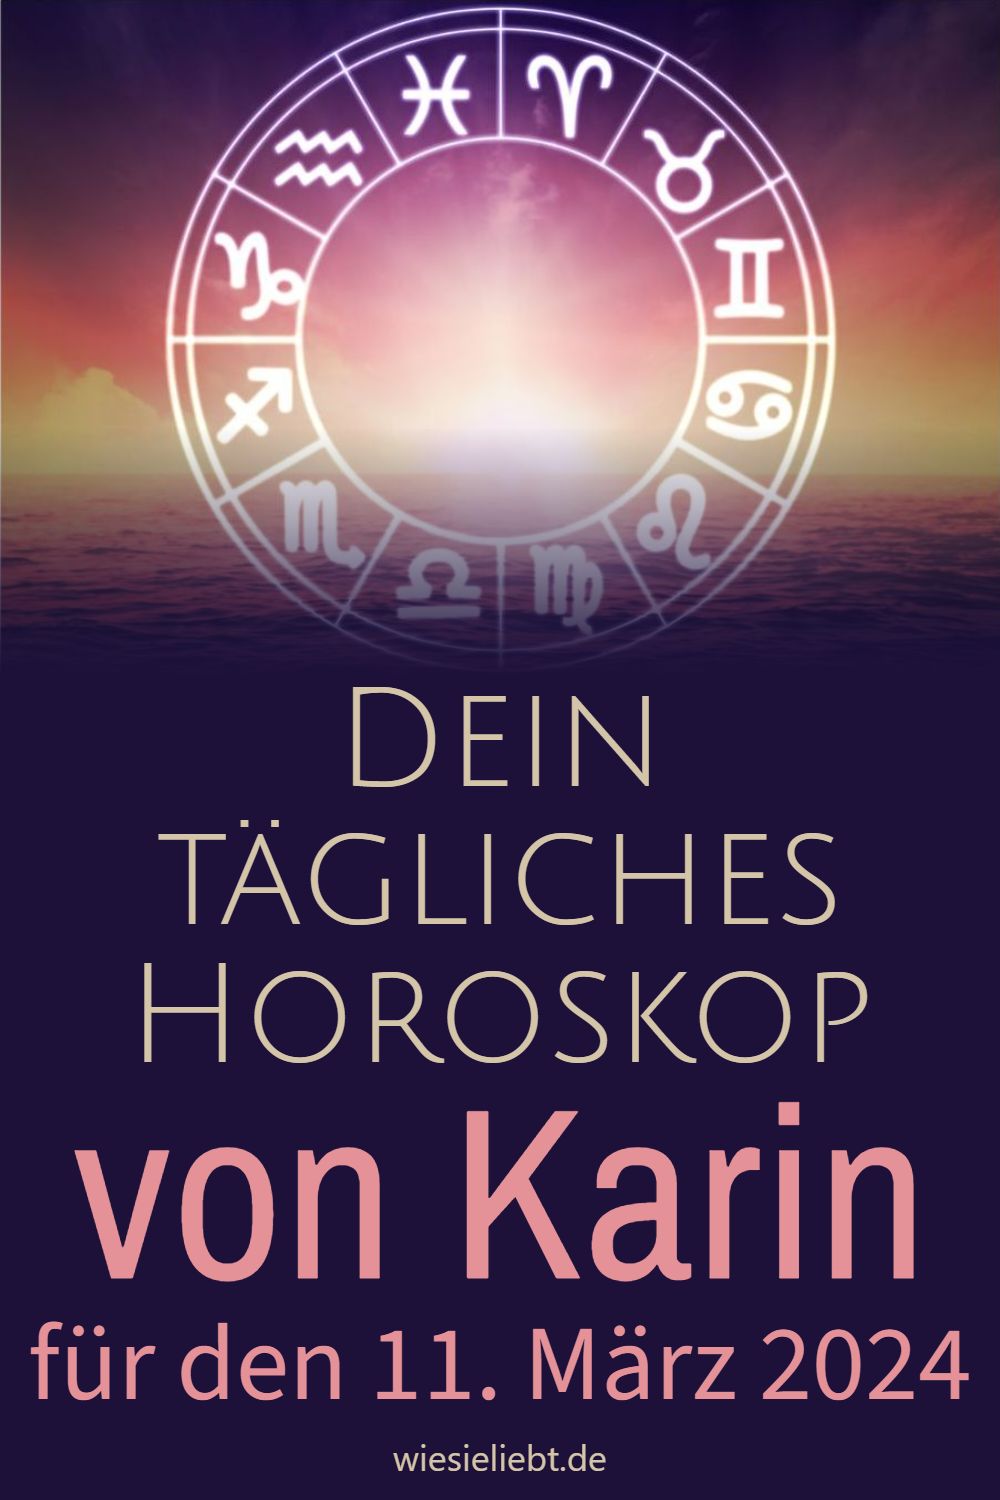 Dein tägliches Horoskop von Karin für den 11. März 2024